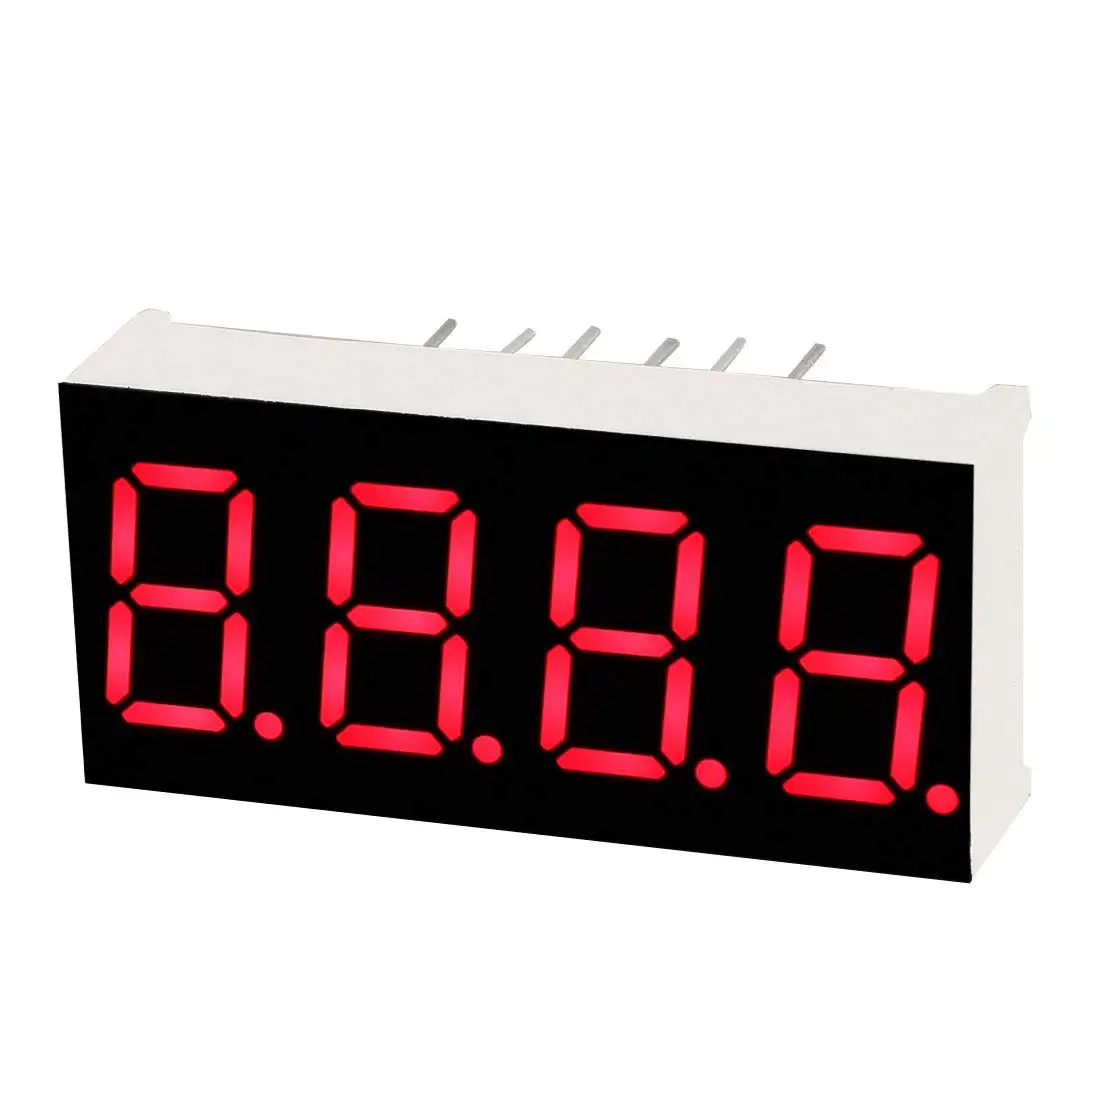 Hot bán Đỏ nixie Ống 0.4 0.56 0.8 inch nixie ống đồng hồ LED hiển thị biểu tượng dấu hiệu đồng hồ với nhiệt độ và độ ẩm LED ống